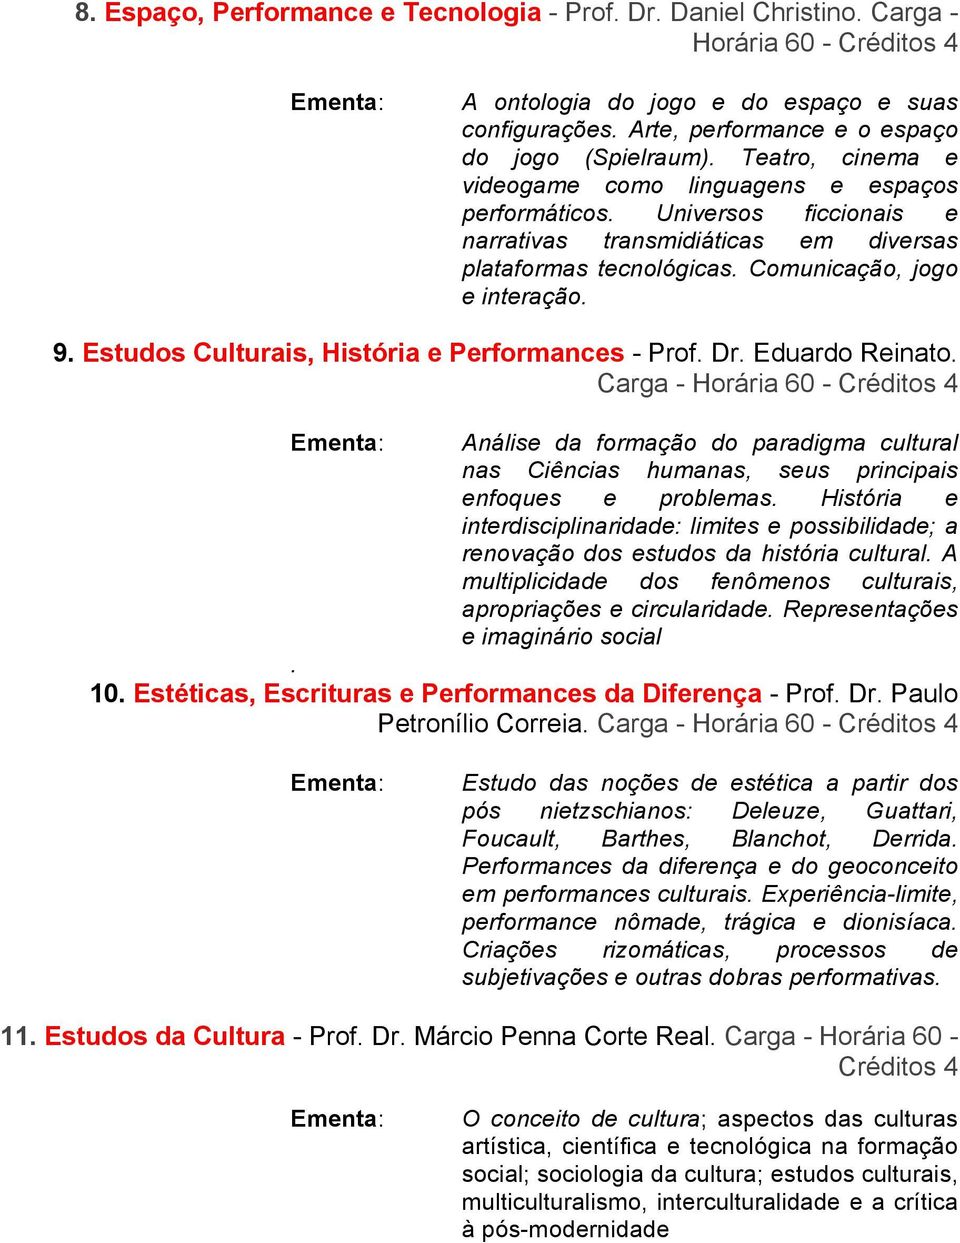 Estudos Culturais, História e Performances - Prof. Dr. Eduardo Reinato. Carga - Horária 60 - Análise da formação do paradigma cultural nas Ciências humanas, seus principais enfoques e problemas.